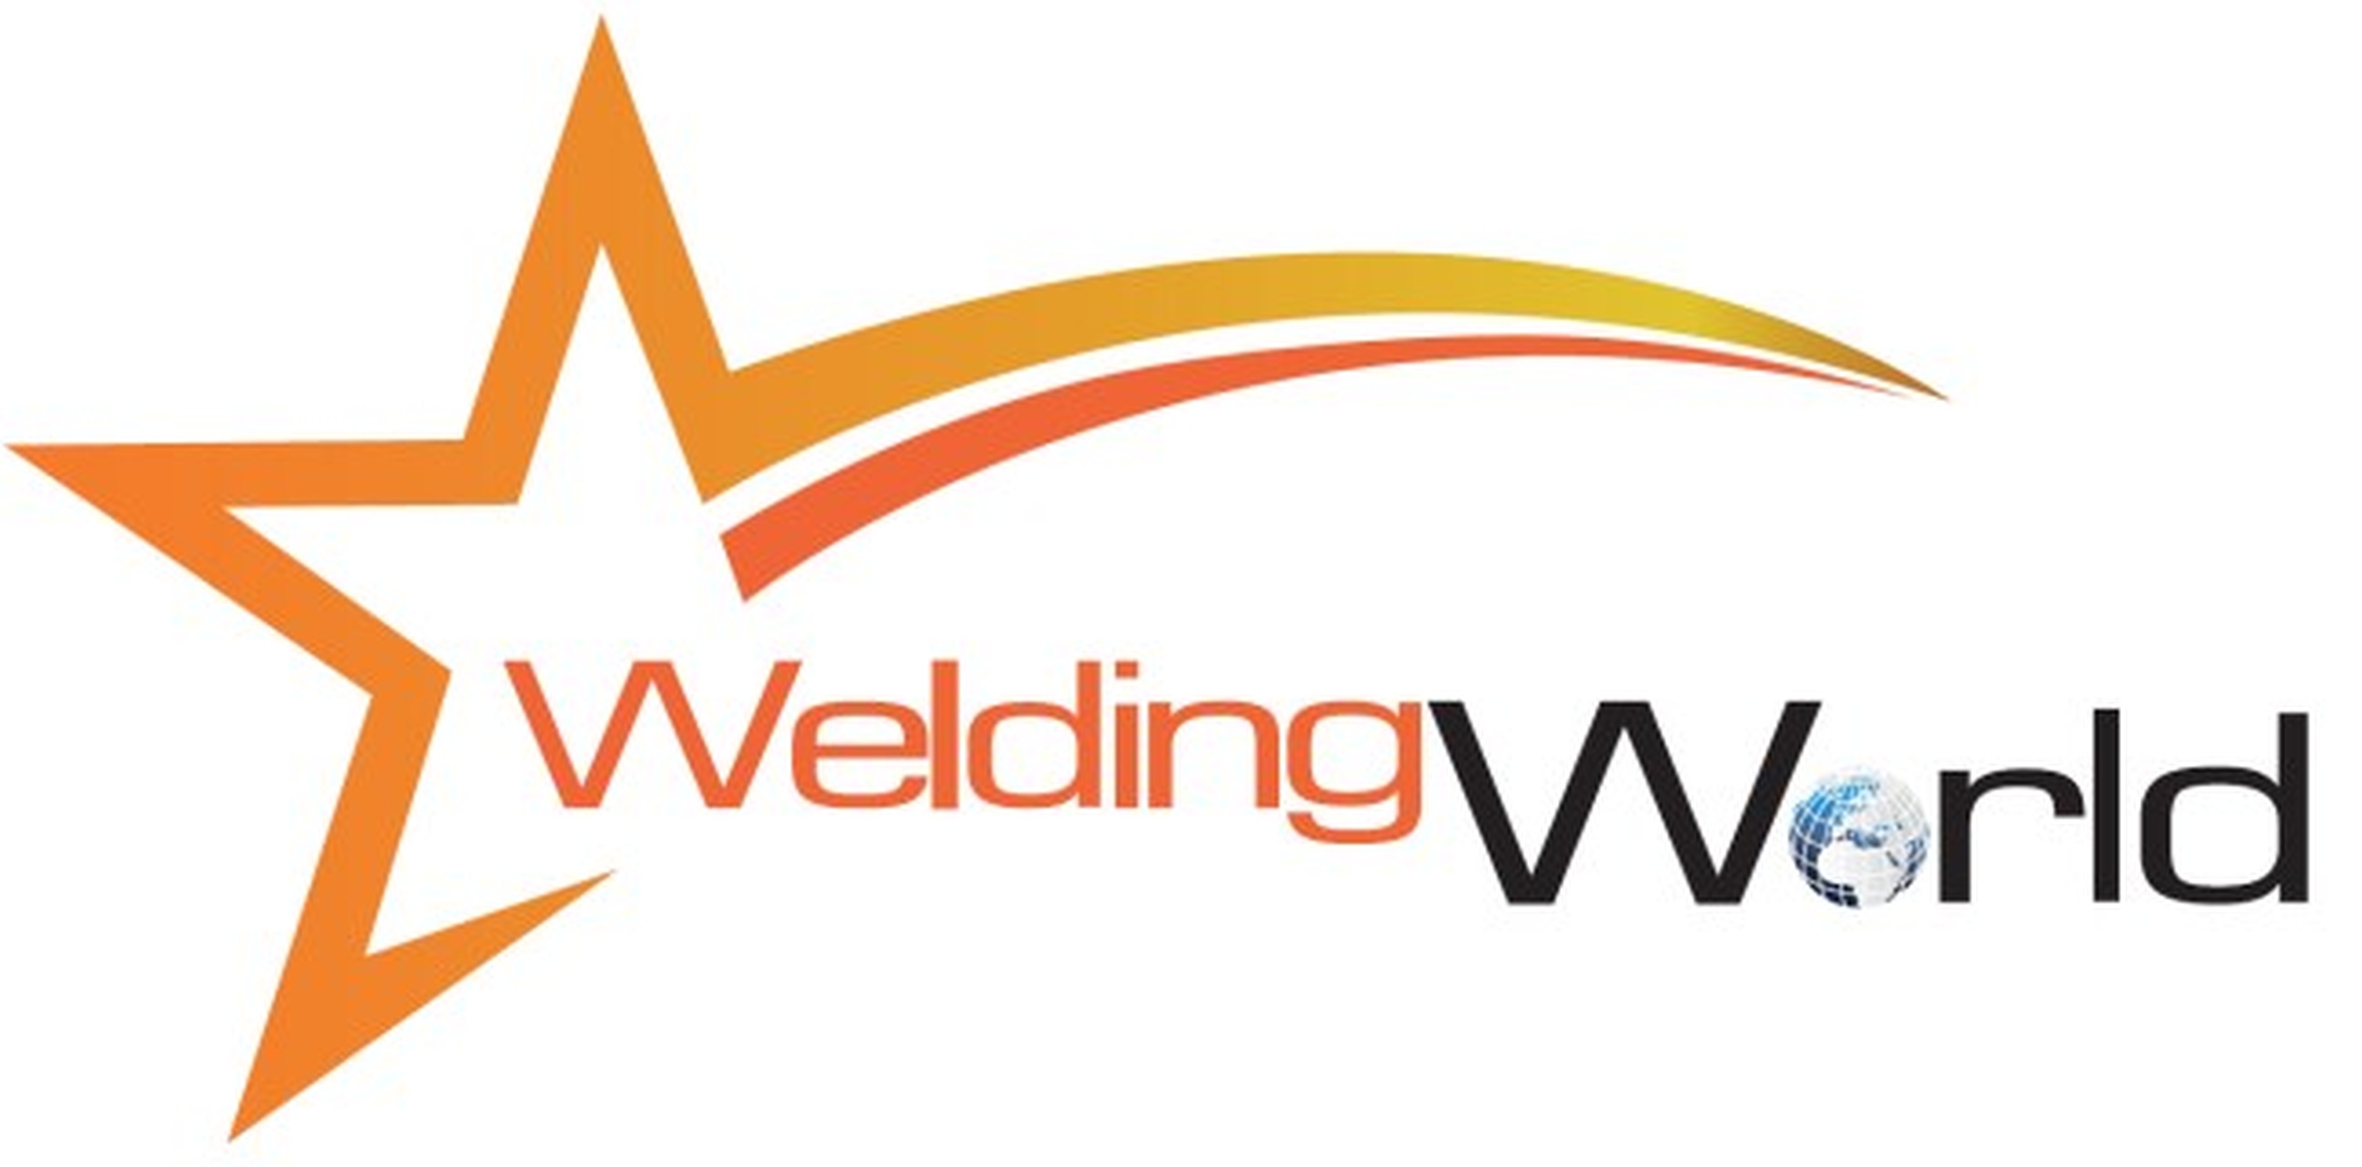 Welding world association logo